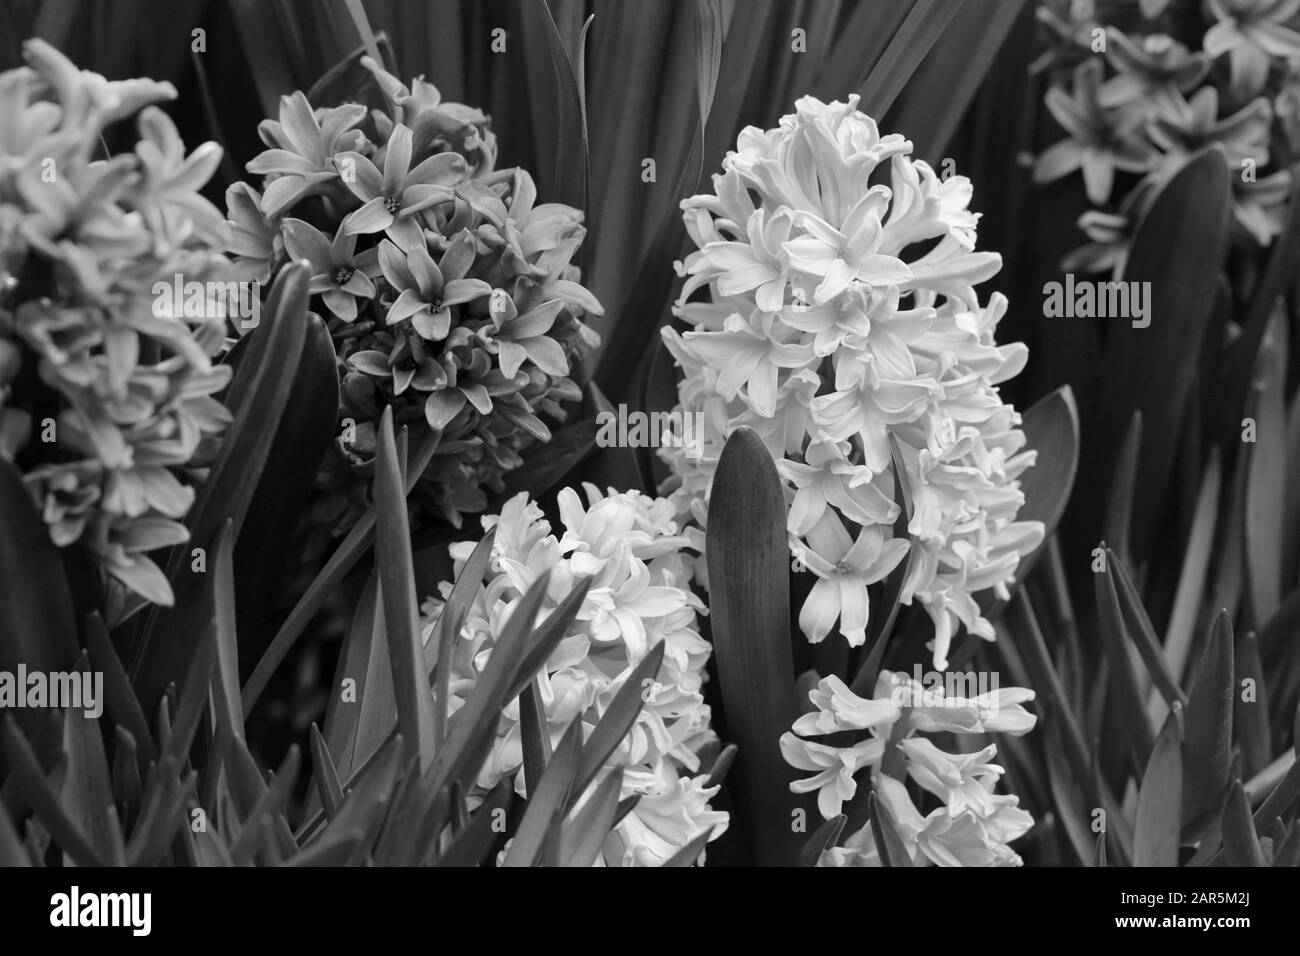 Fleurs de jacinthe fleuries avec beaucoup de feuilles. De belles fleurs de début de printemps étaient utilisées pour célébrer Pâques. Gros plan pris dans un jardin intérieur. Banque D'Images